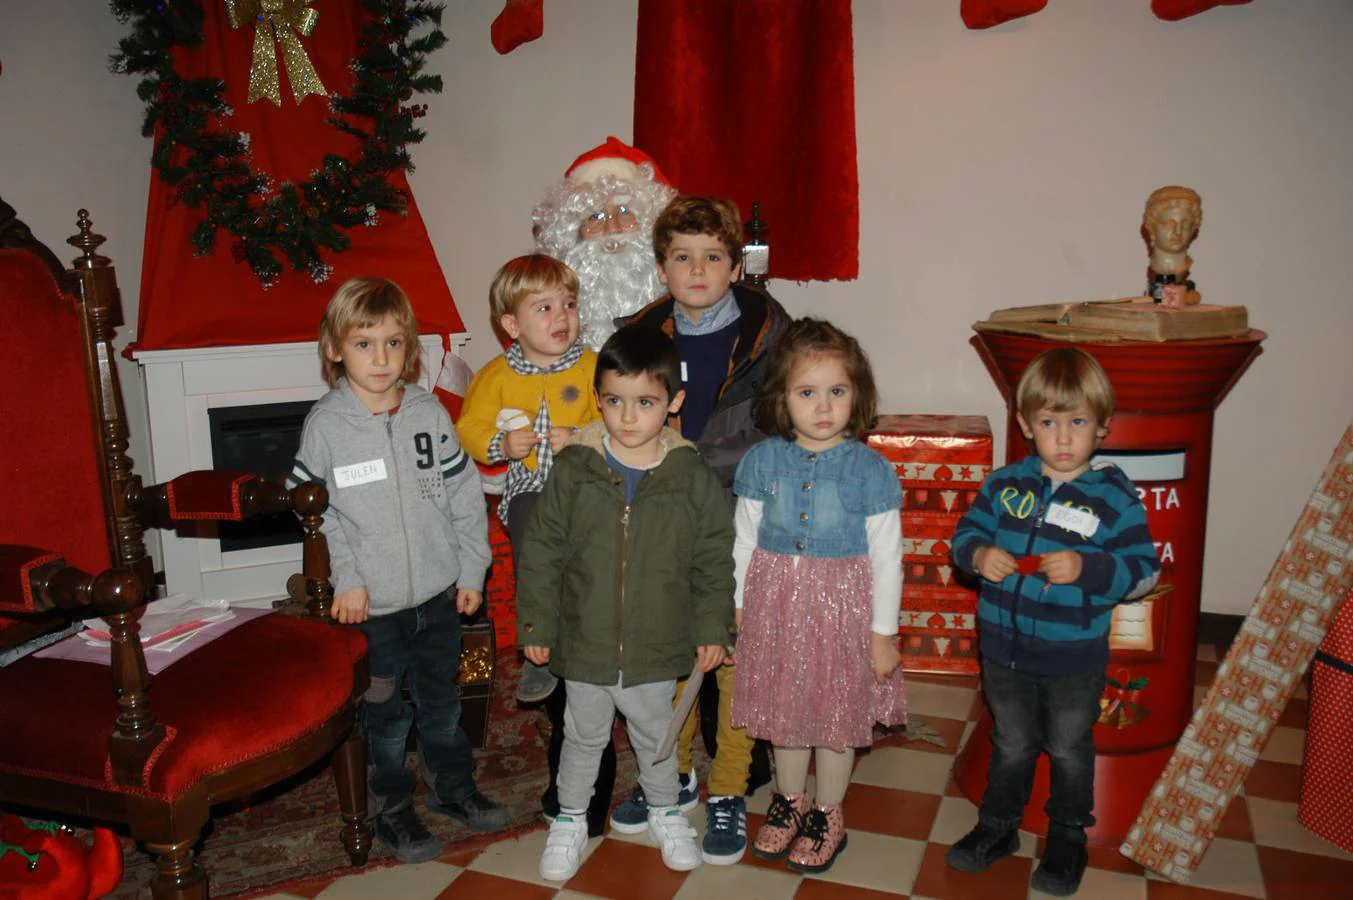 Diversas actividades han llenado estos días de espíritu navideño la localidad de Calahorra: belenes, música, Papá Noel, concurso de villancicos...